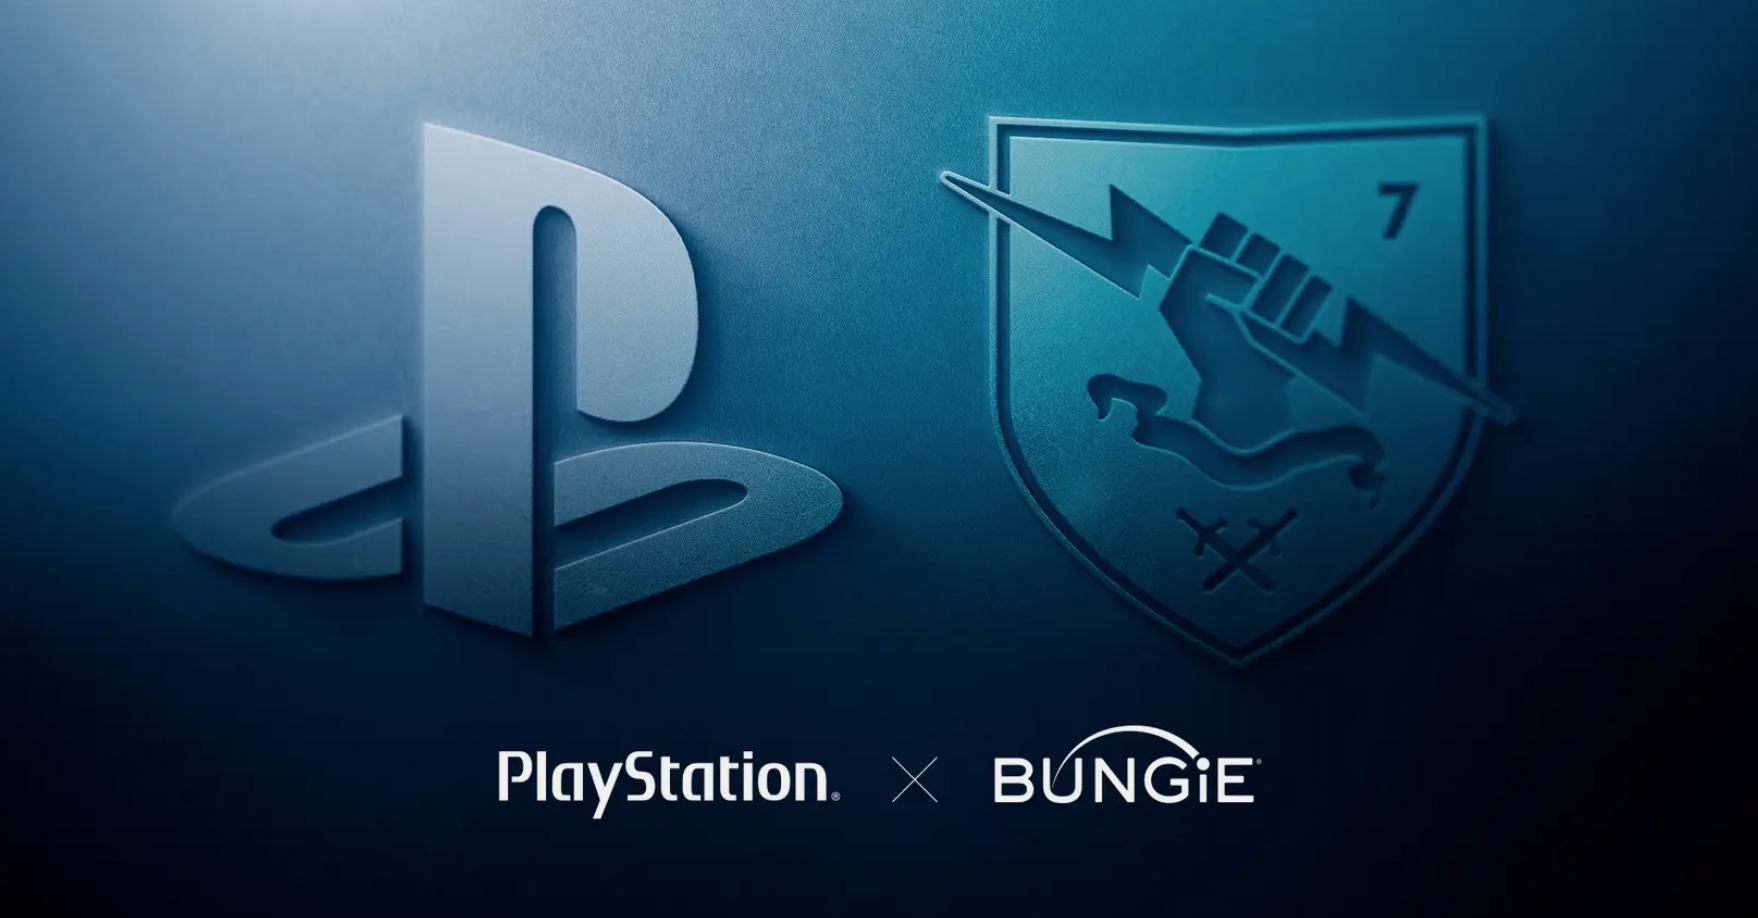 Sony kauft Bungie den Hersteller von Destiny und originalen Halo Spielen